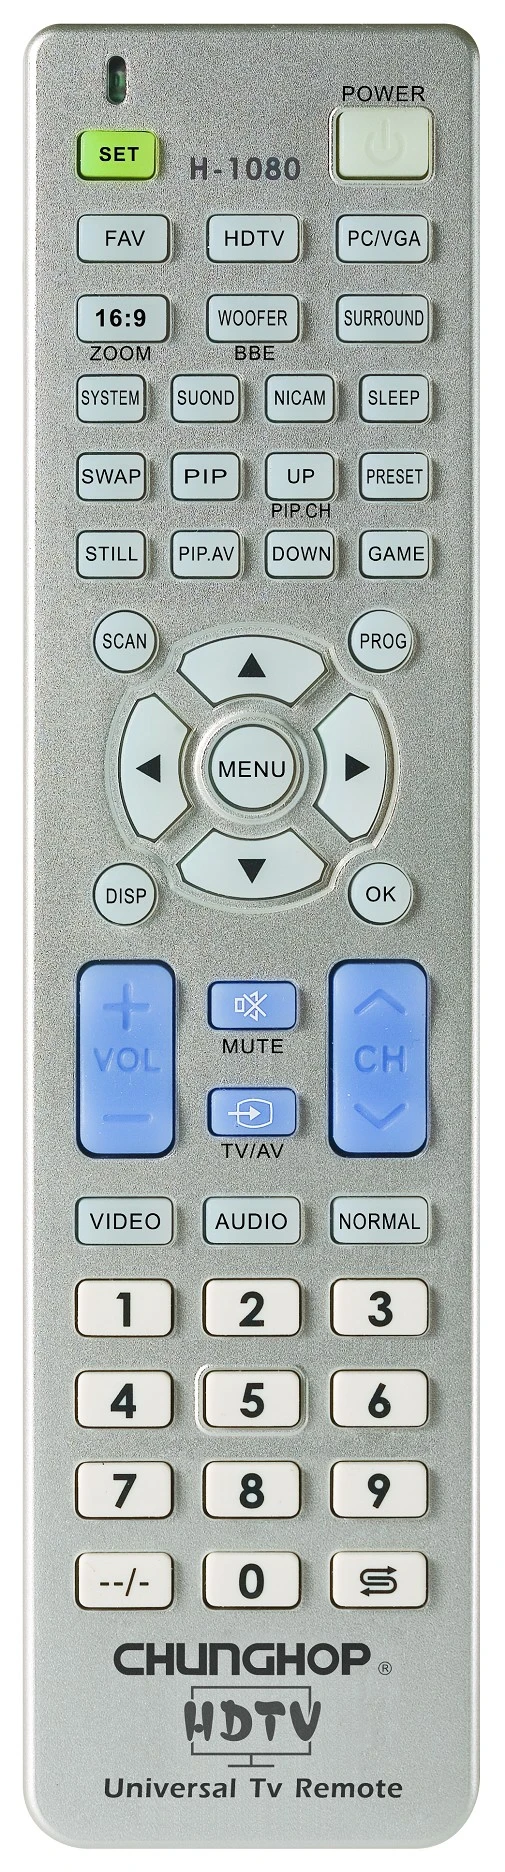 Chunghop H-1080E IR Universal TV Remote Control